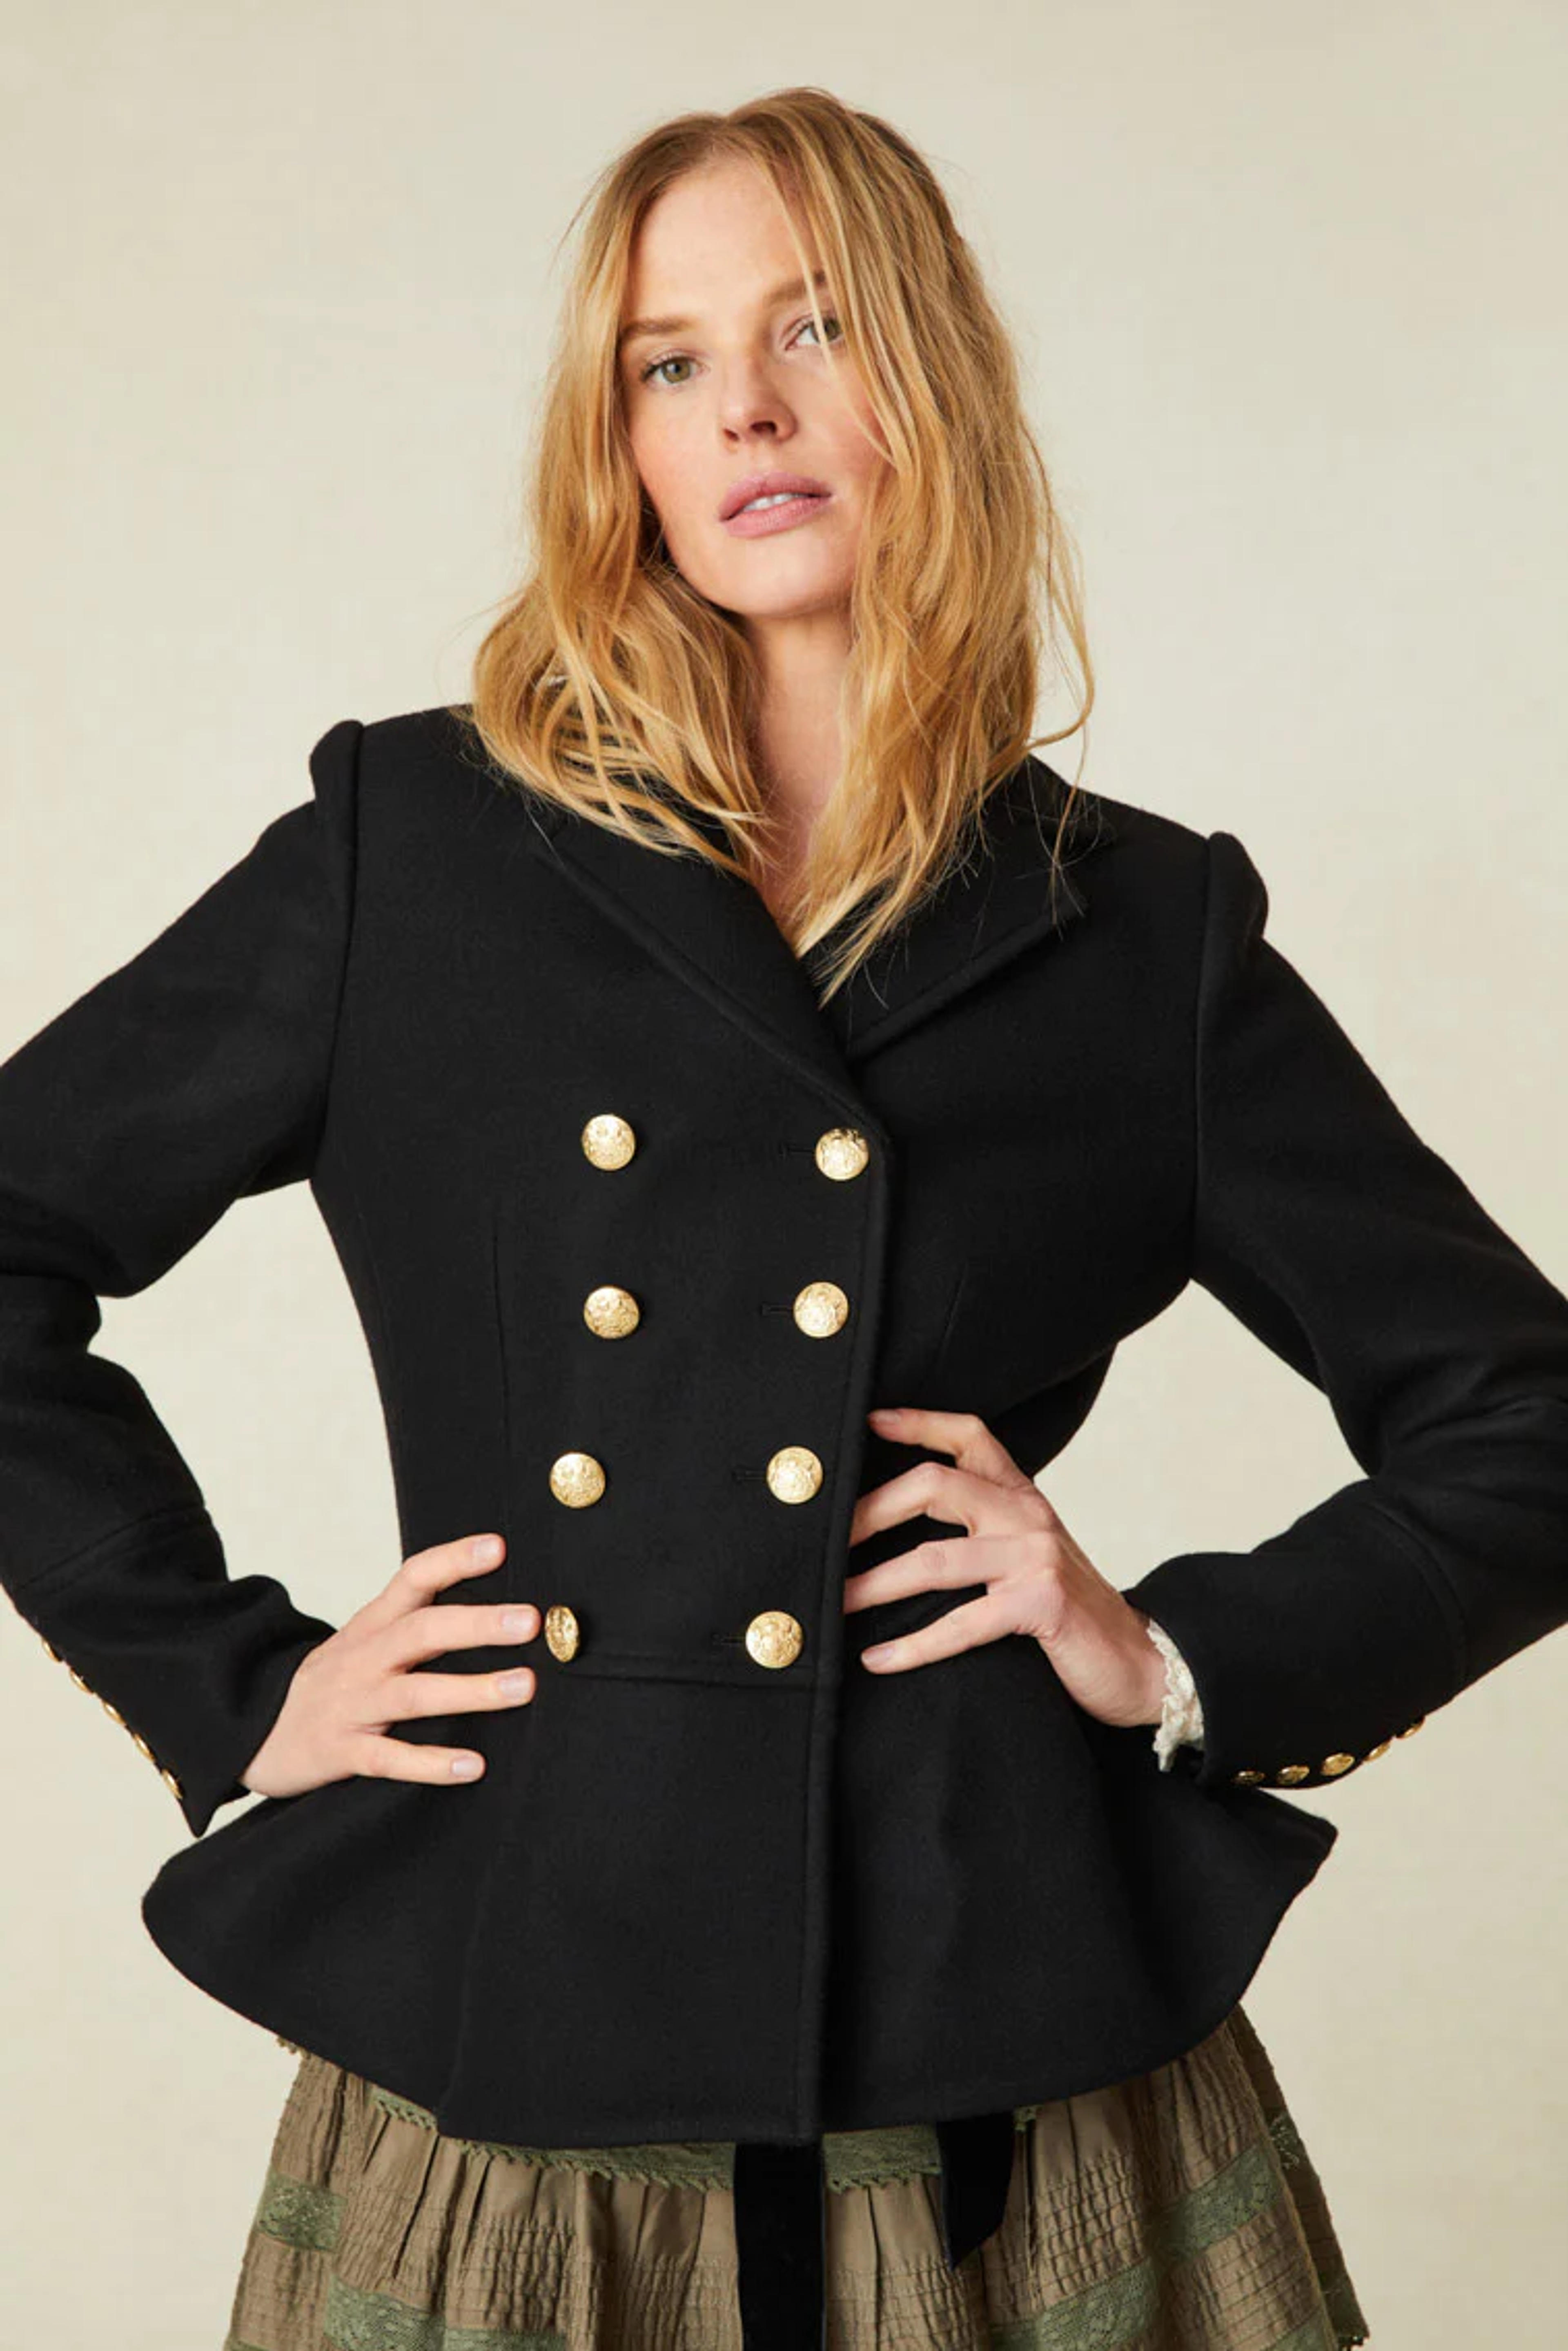 Morrow Jacket - Women's Outerwear | Shop LoveShackFancy.com